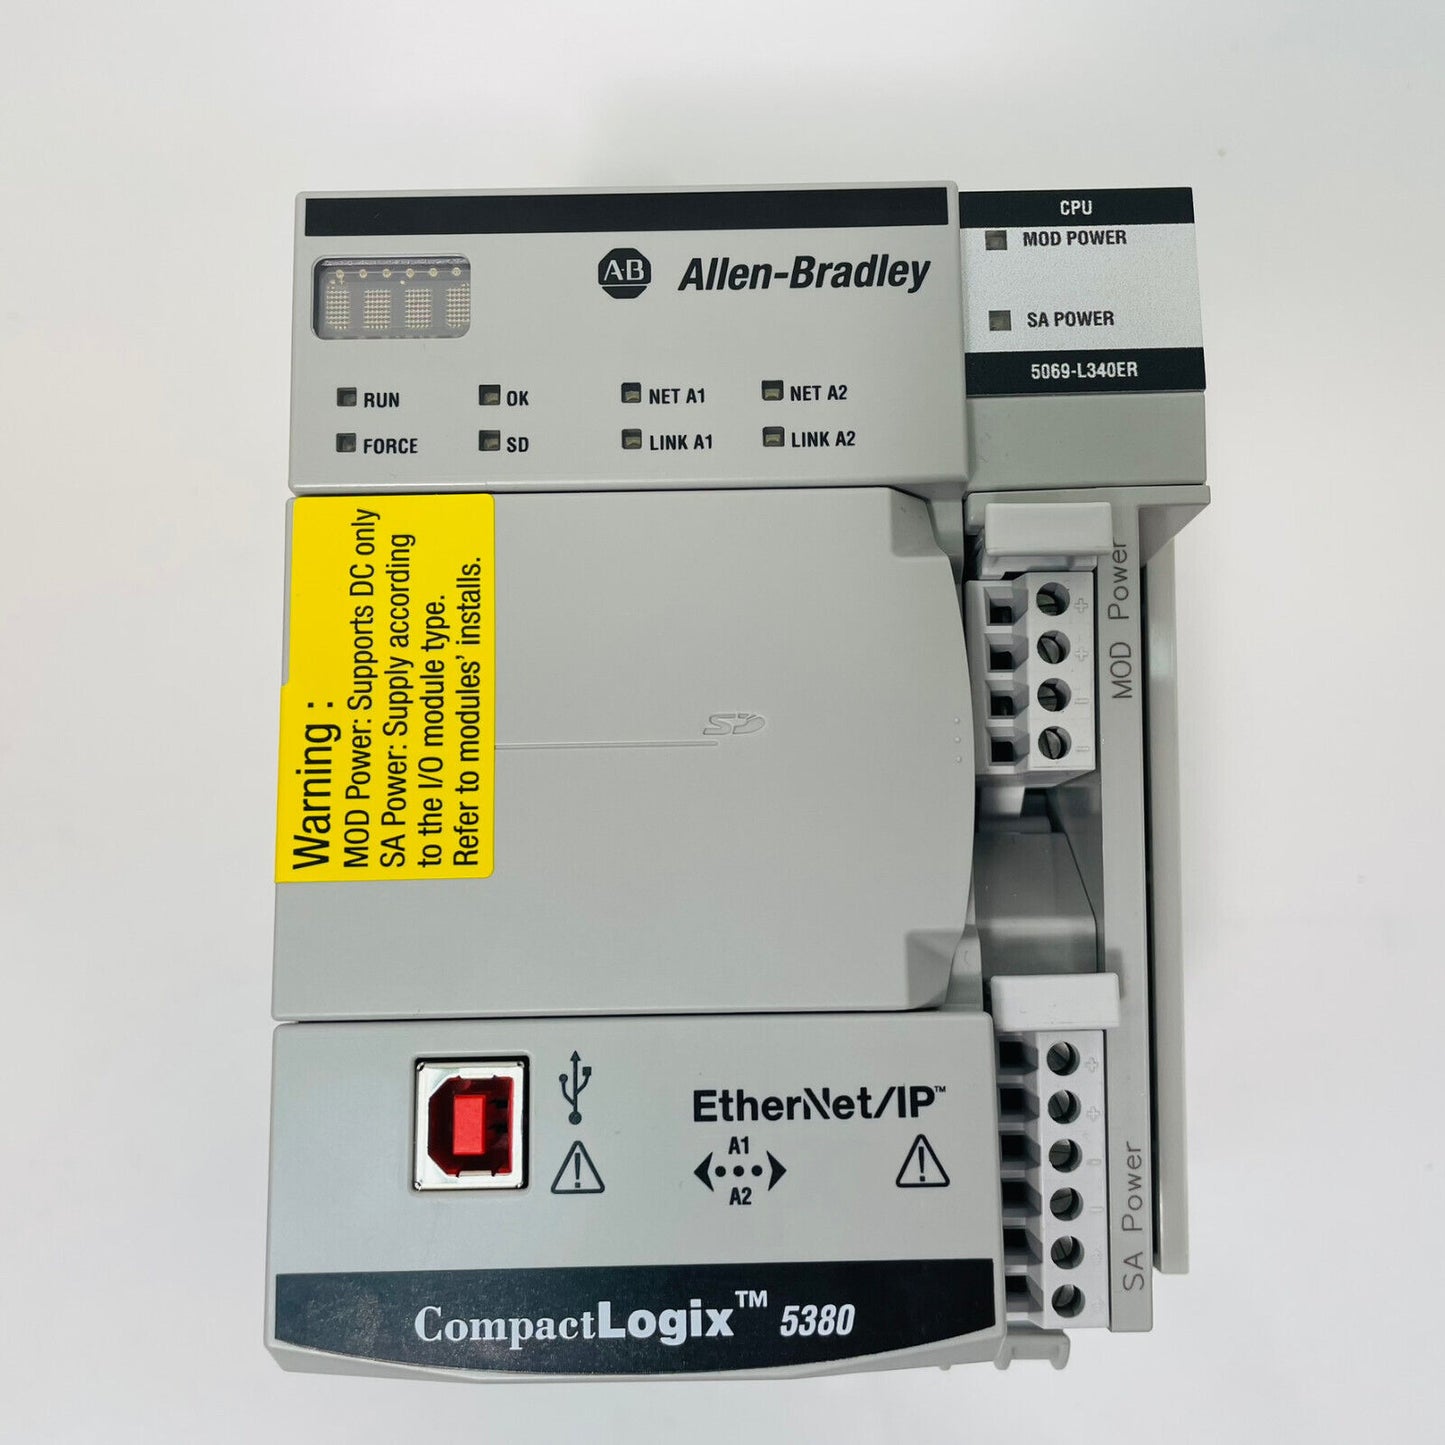 New Allen-Bradley 5069-L340ER /A CompactLogix Controller